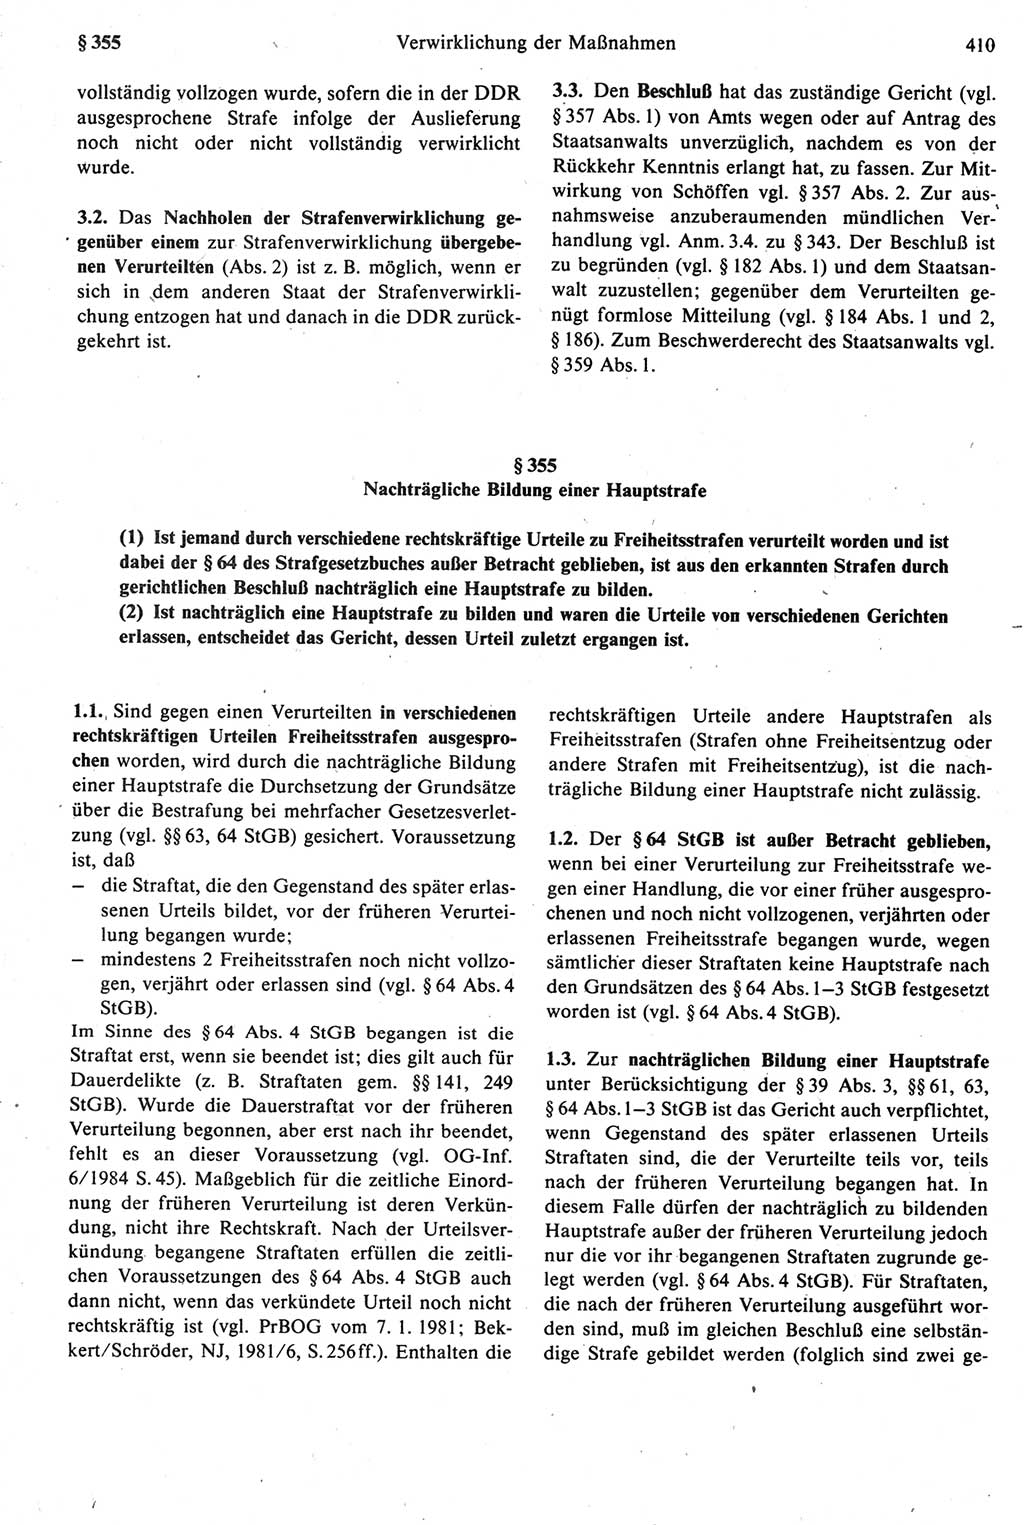 Strafprozeßrecht der DDR [Deutsche Demokratische Republik], Kommentar zur Strafprozeßordnung (StPO) 1987, Seite 410 (Strafprozeßr. DDR Komm. StPO 1987, S. 410)